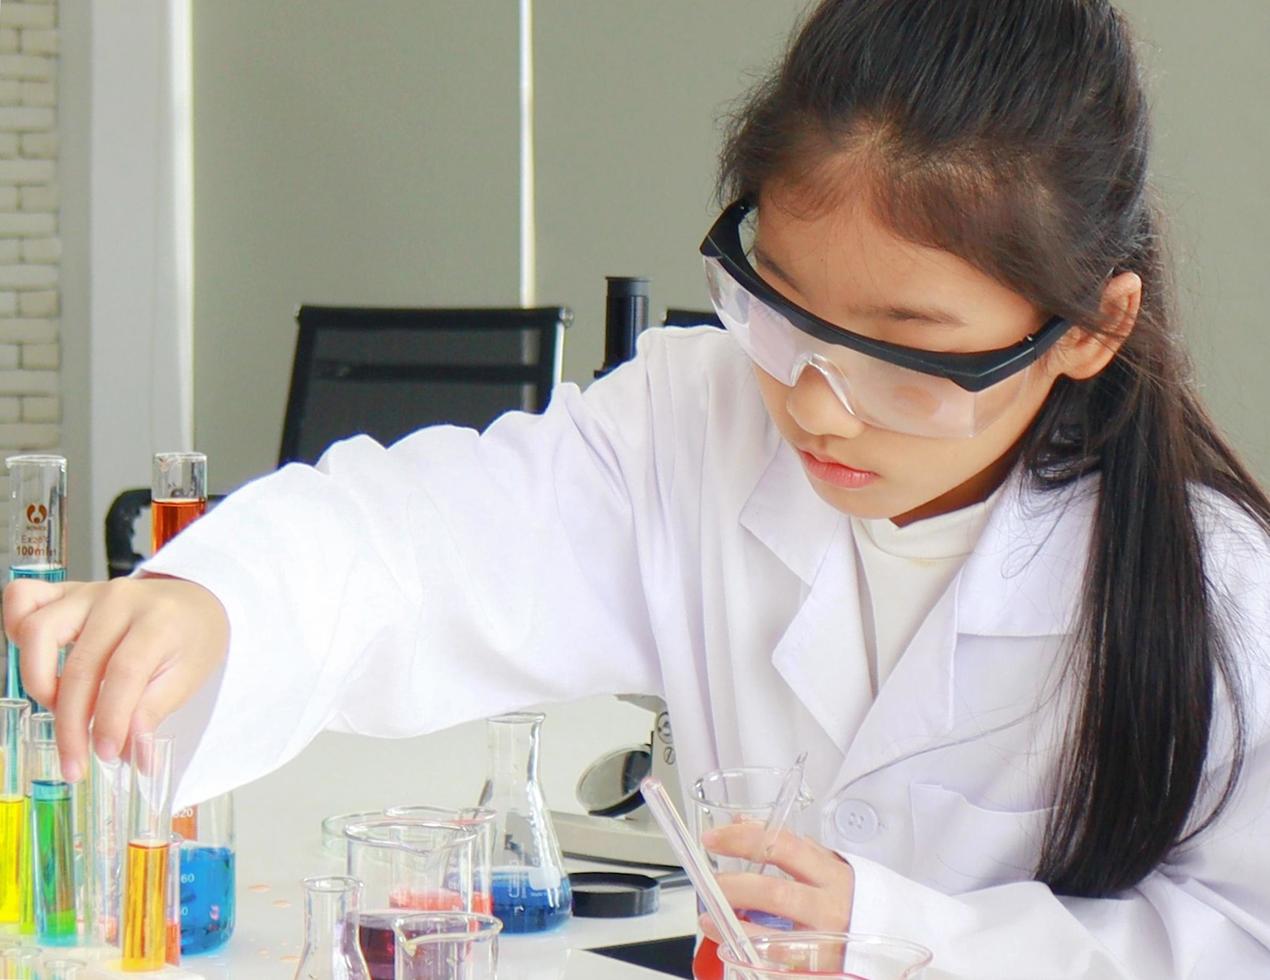 jovem aluna fazendo experimentos científicos com um tubo químico em um laboratório foto